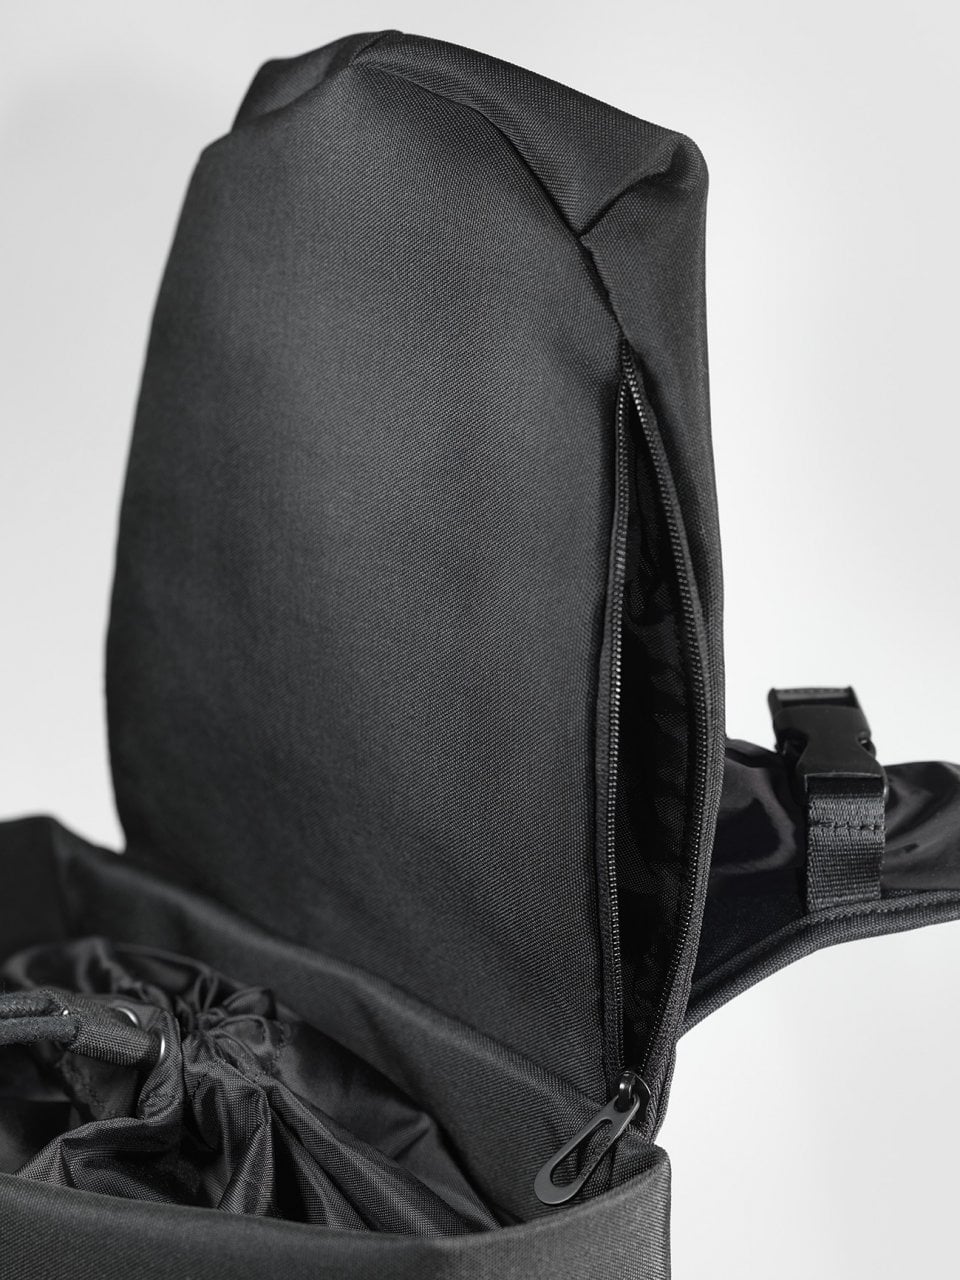 # 法國時尚機能包Côte&Ciel：從十九世紀傳統包袋模樣延伸而出的新款式「TIGRIS」 7